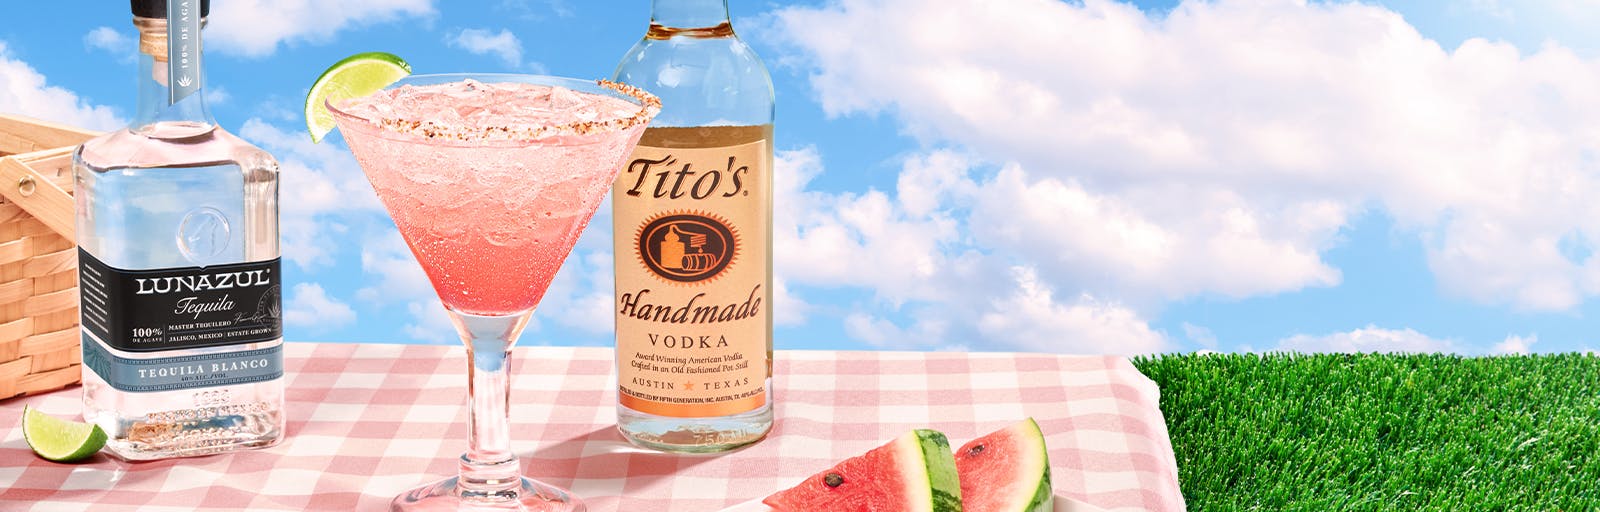 Tito's Watermelon Spritz | Chili's Margarita of the Month | June